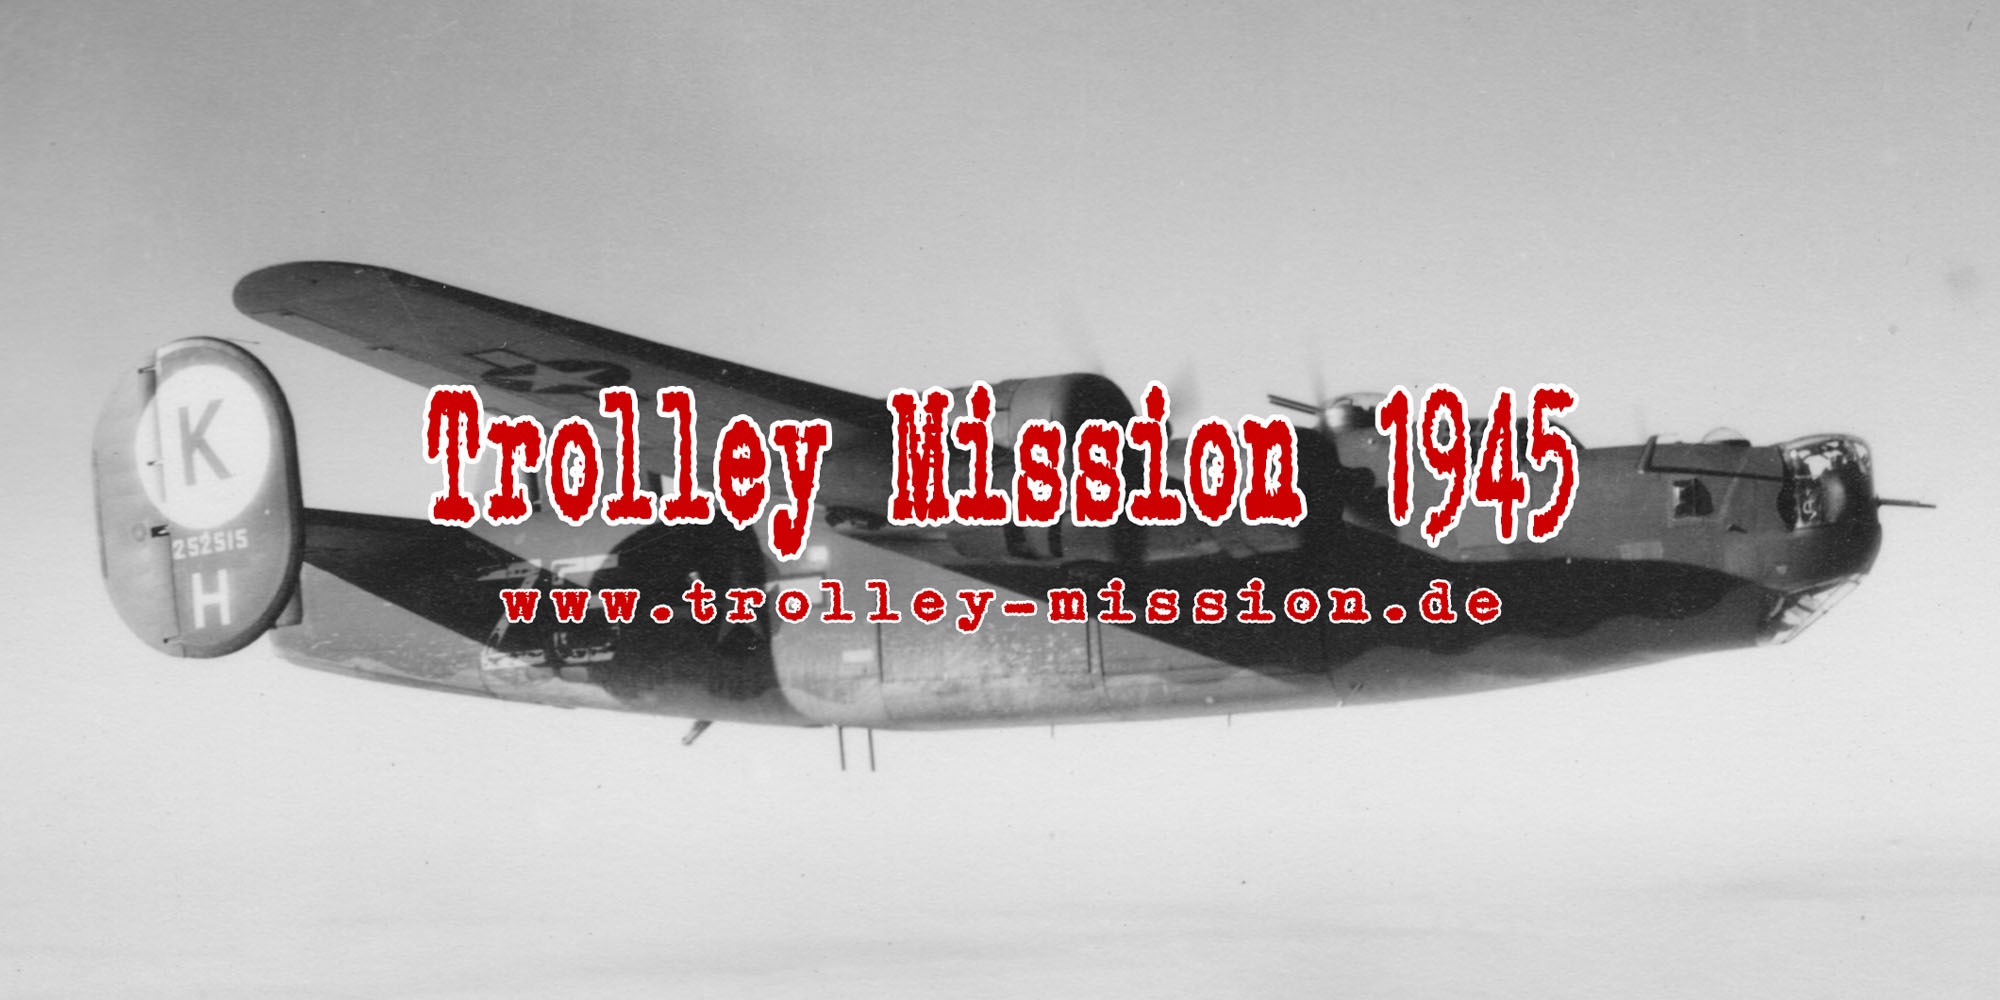 (c) Trolley-mission.de